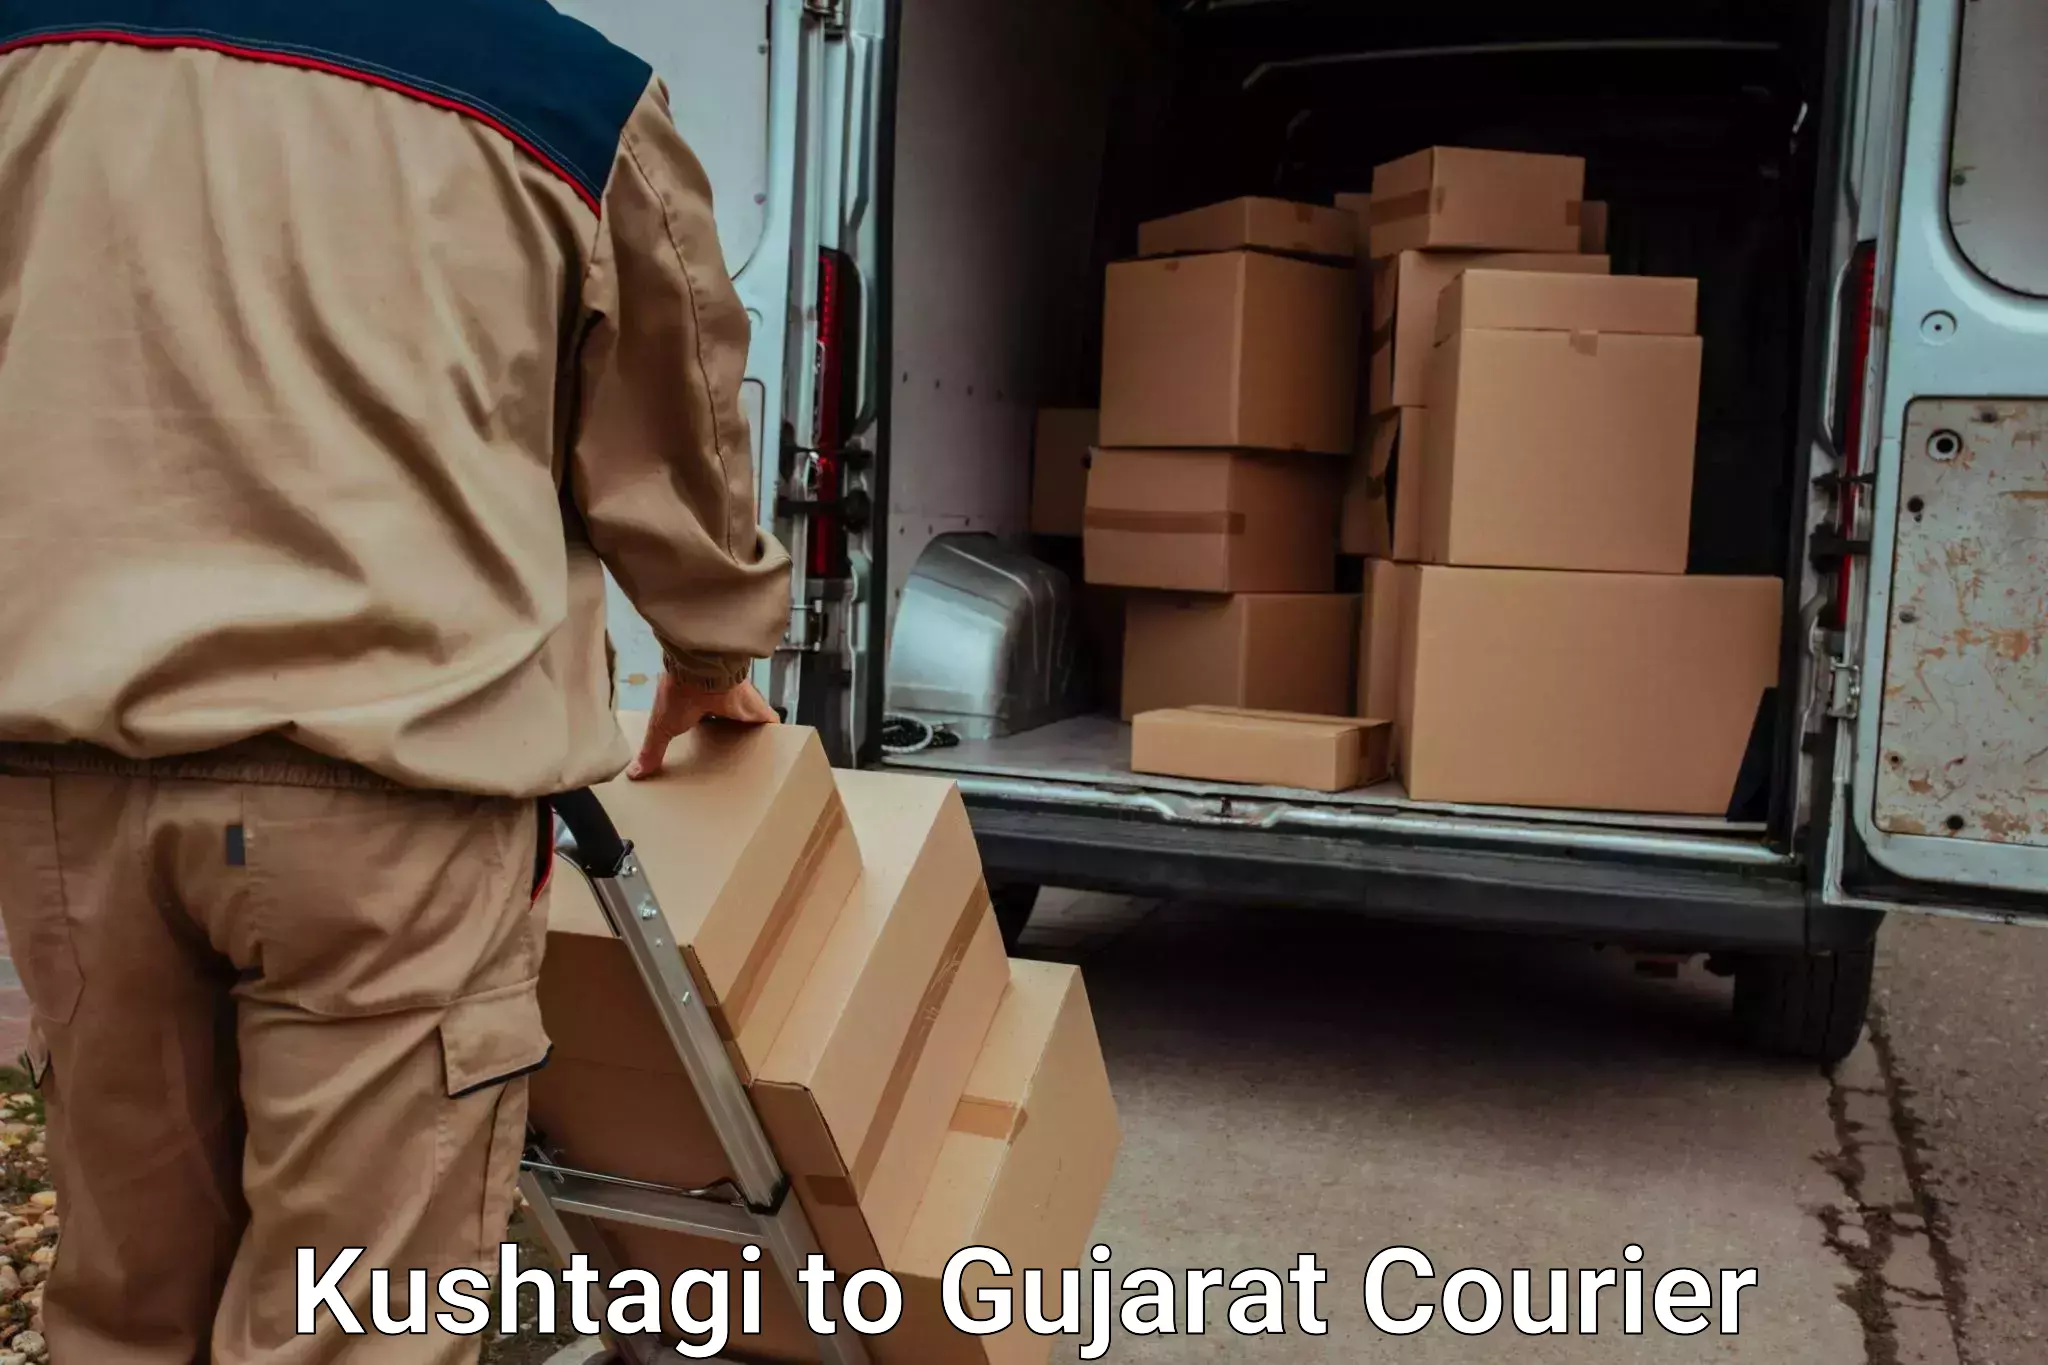 Trusted household movers Kushtagi to GIDC